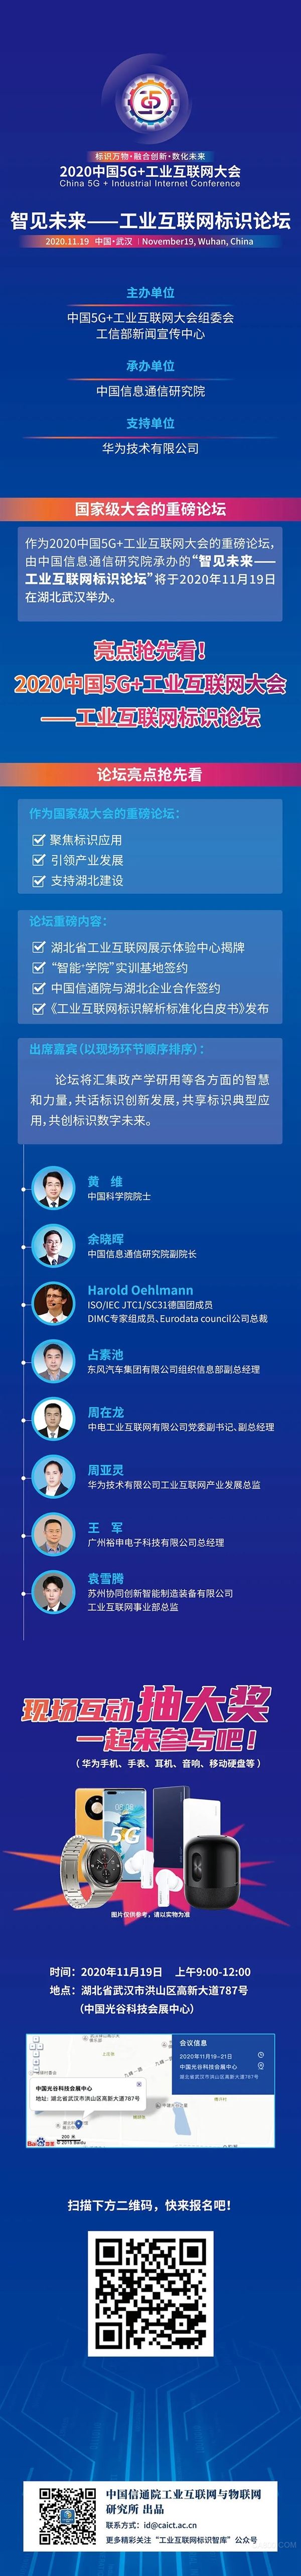 2020中国5G+工业互联网大会—工业互联网标识论坛11月19日开幕